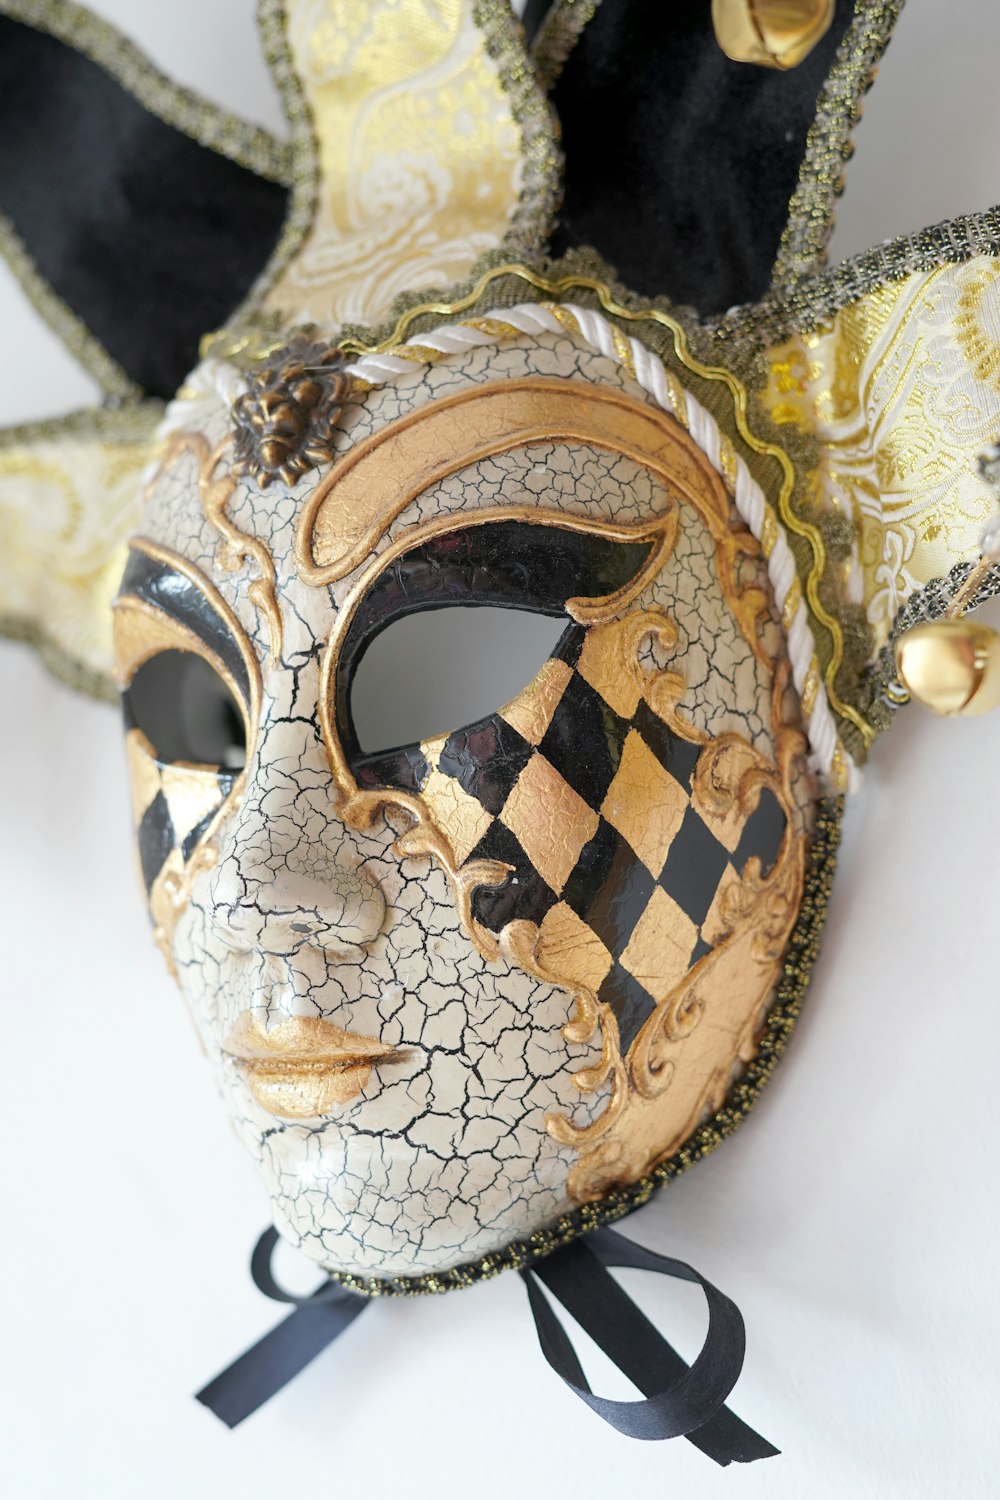 um close up de uma máscara em uma superfície branca